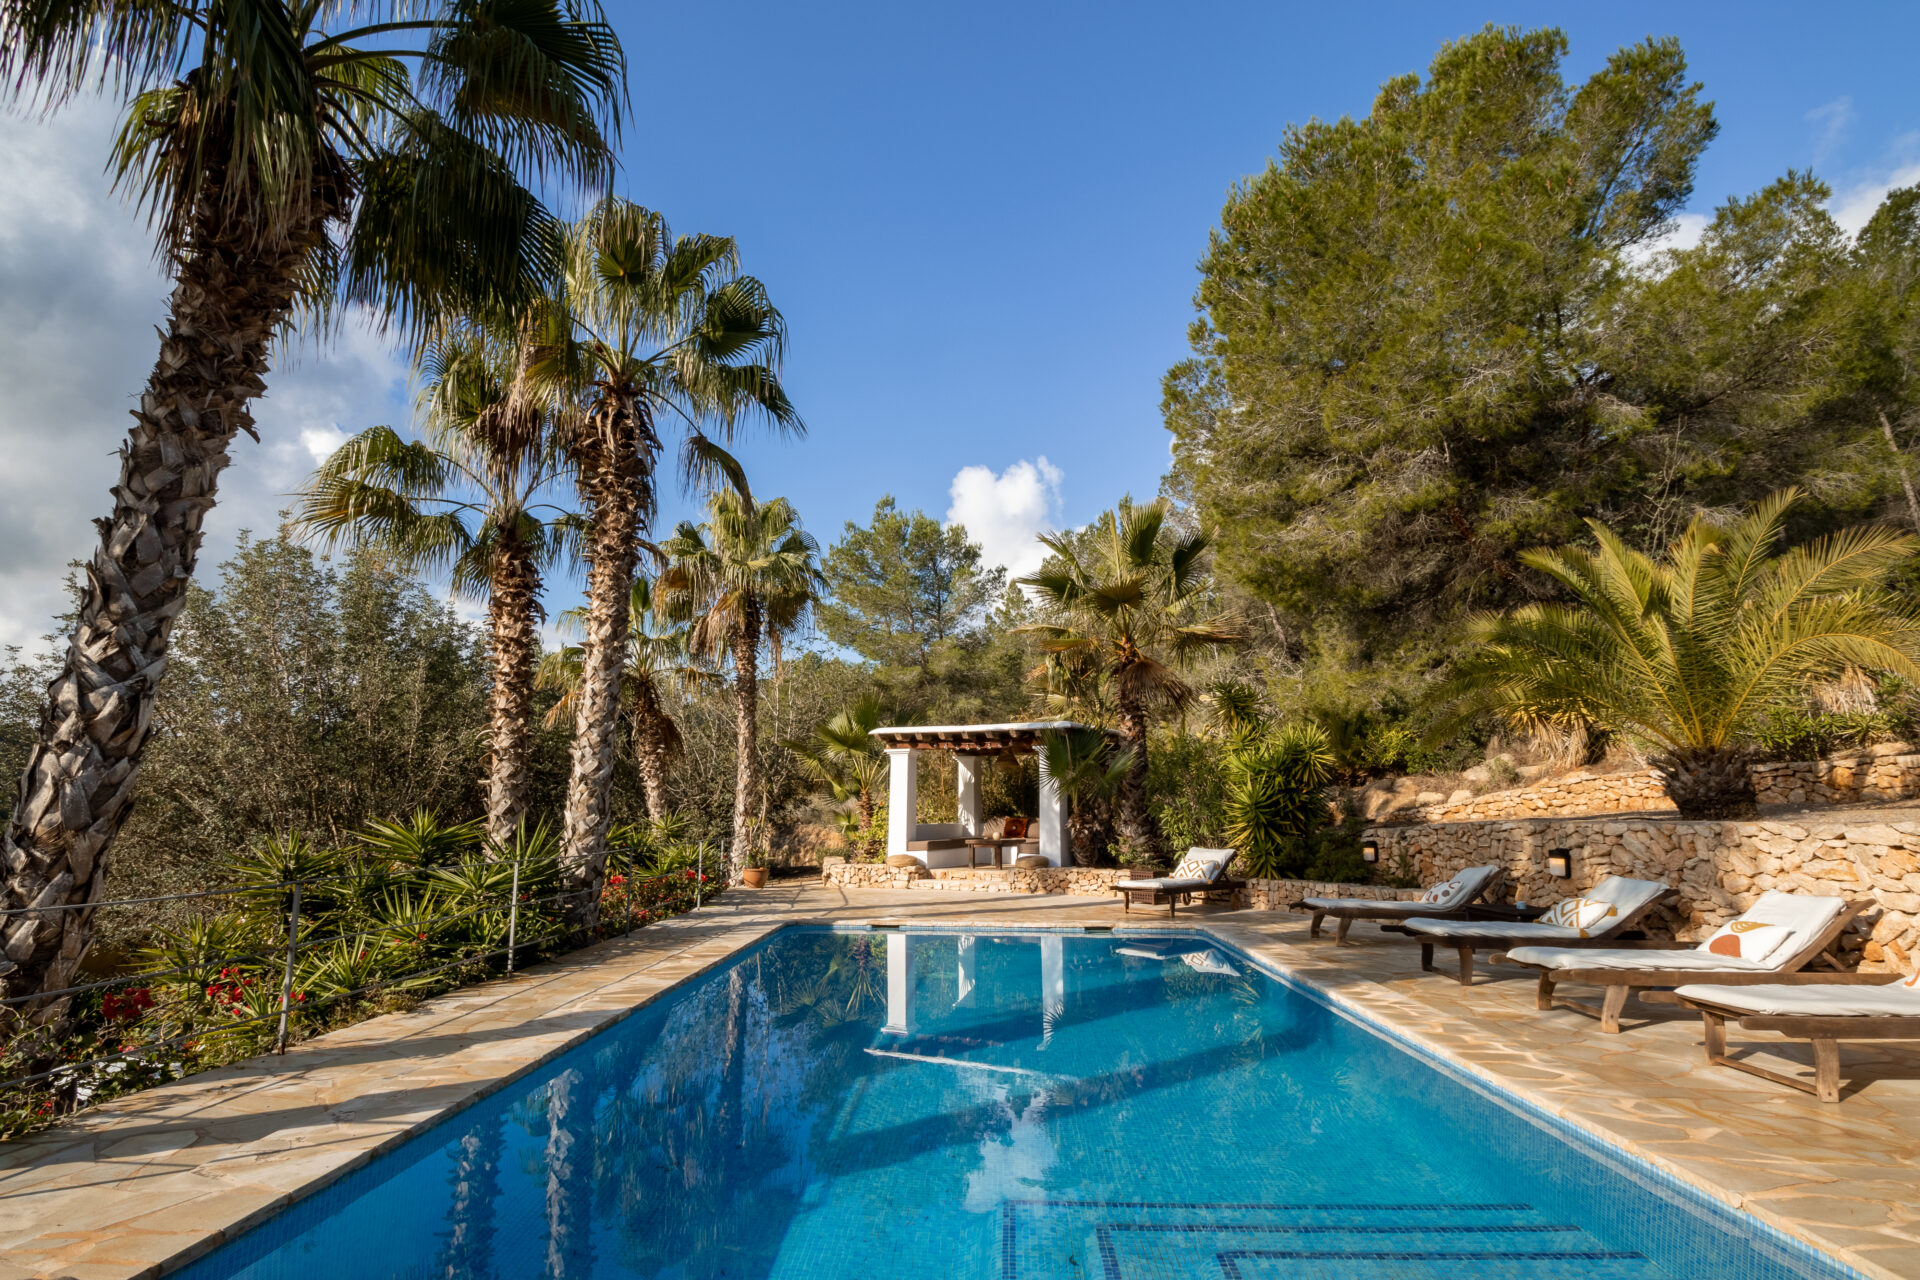 Tuin Lauri Lauri manifesteerde haar eigen retreat locatie op Ibiza